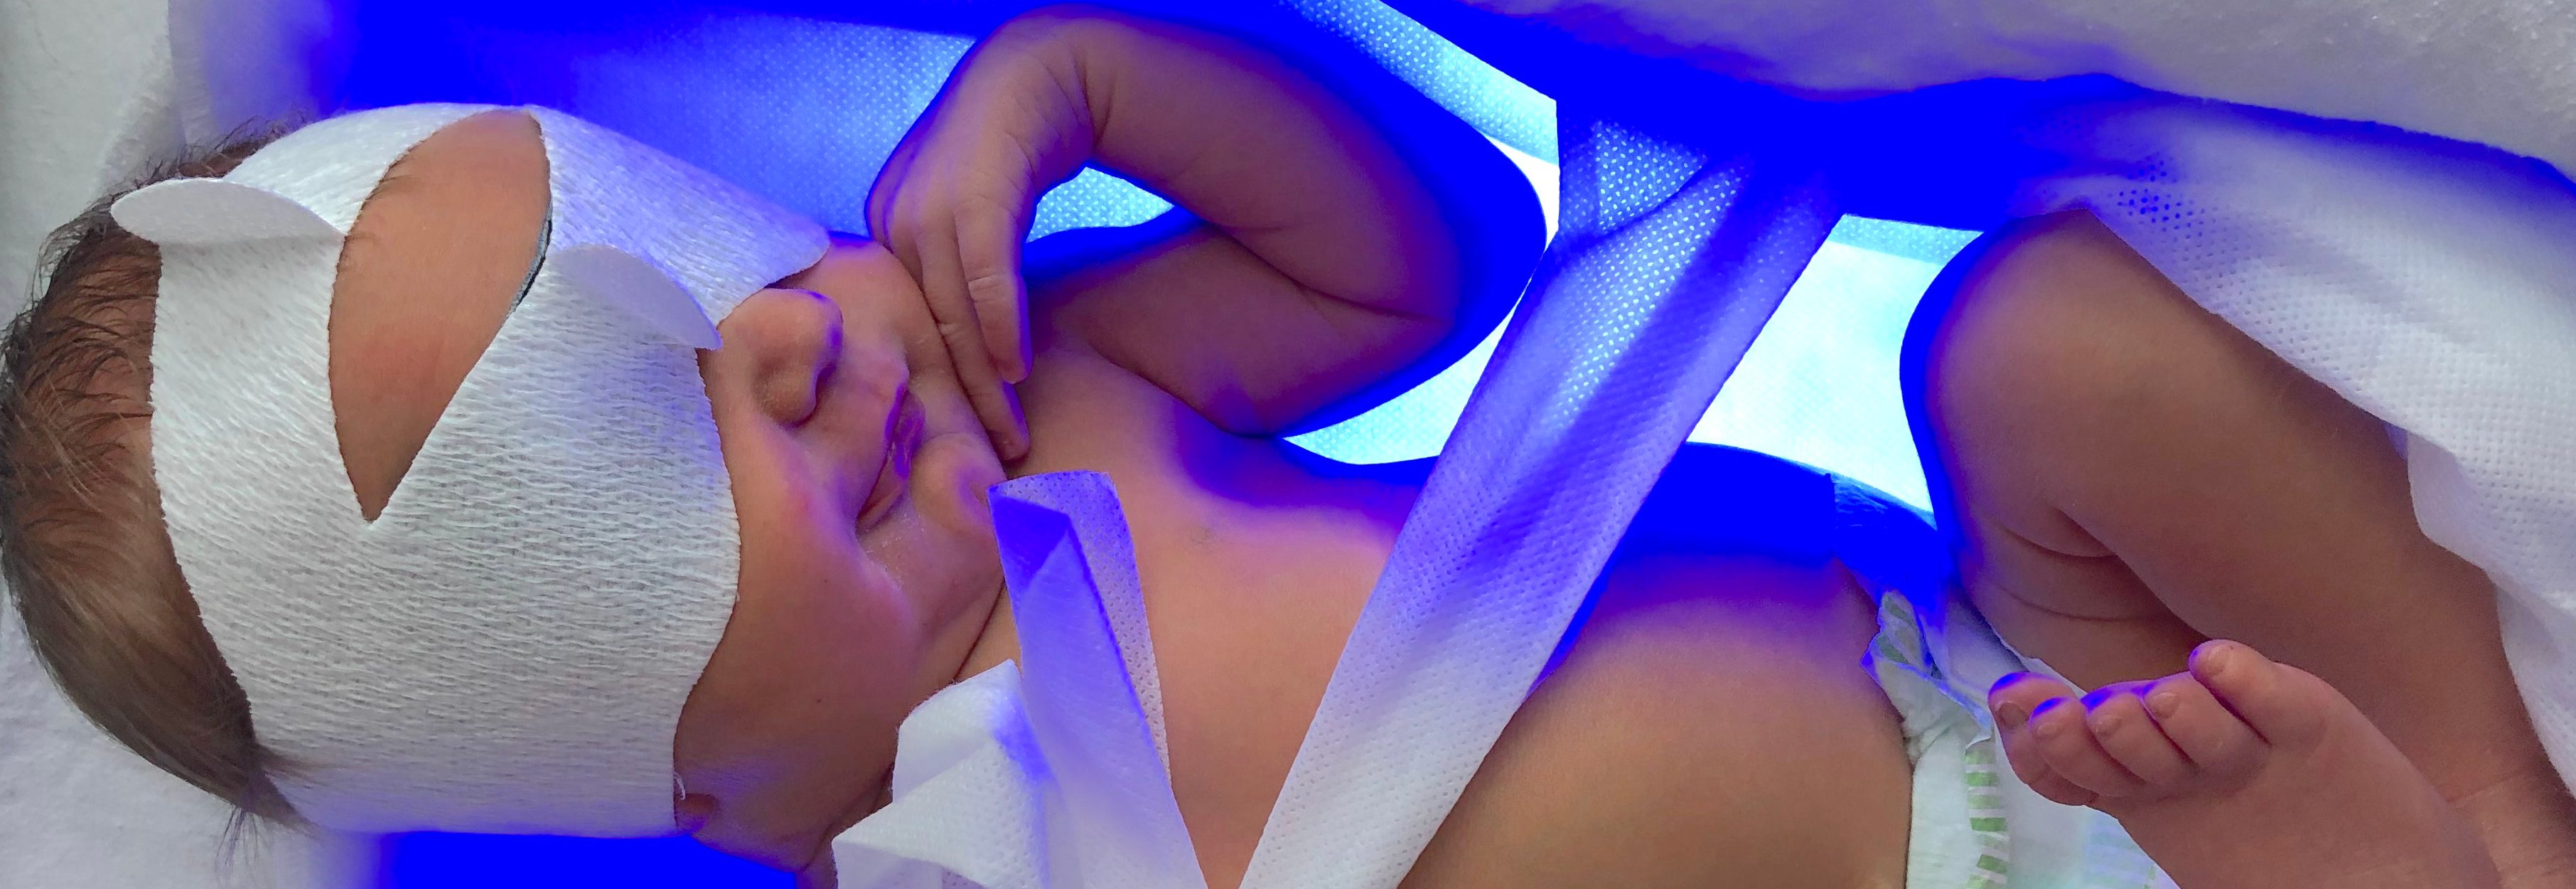 Sinivalohoito kotona helpottaa vauvaperheen arkea | GE HealthCare (Finland)